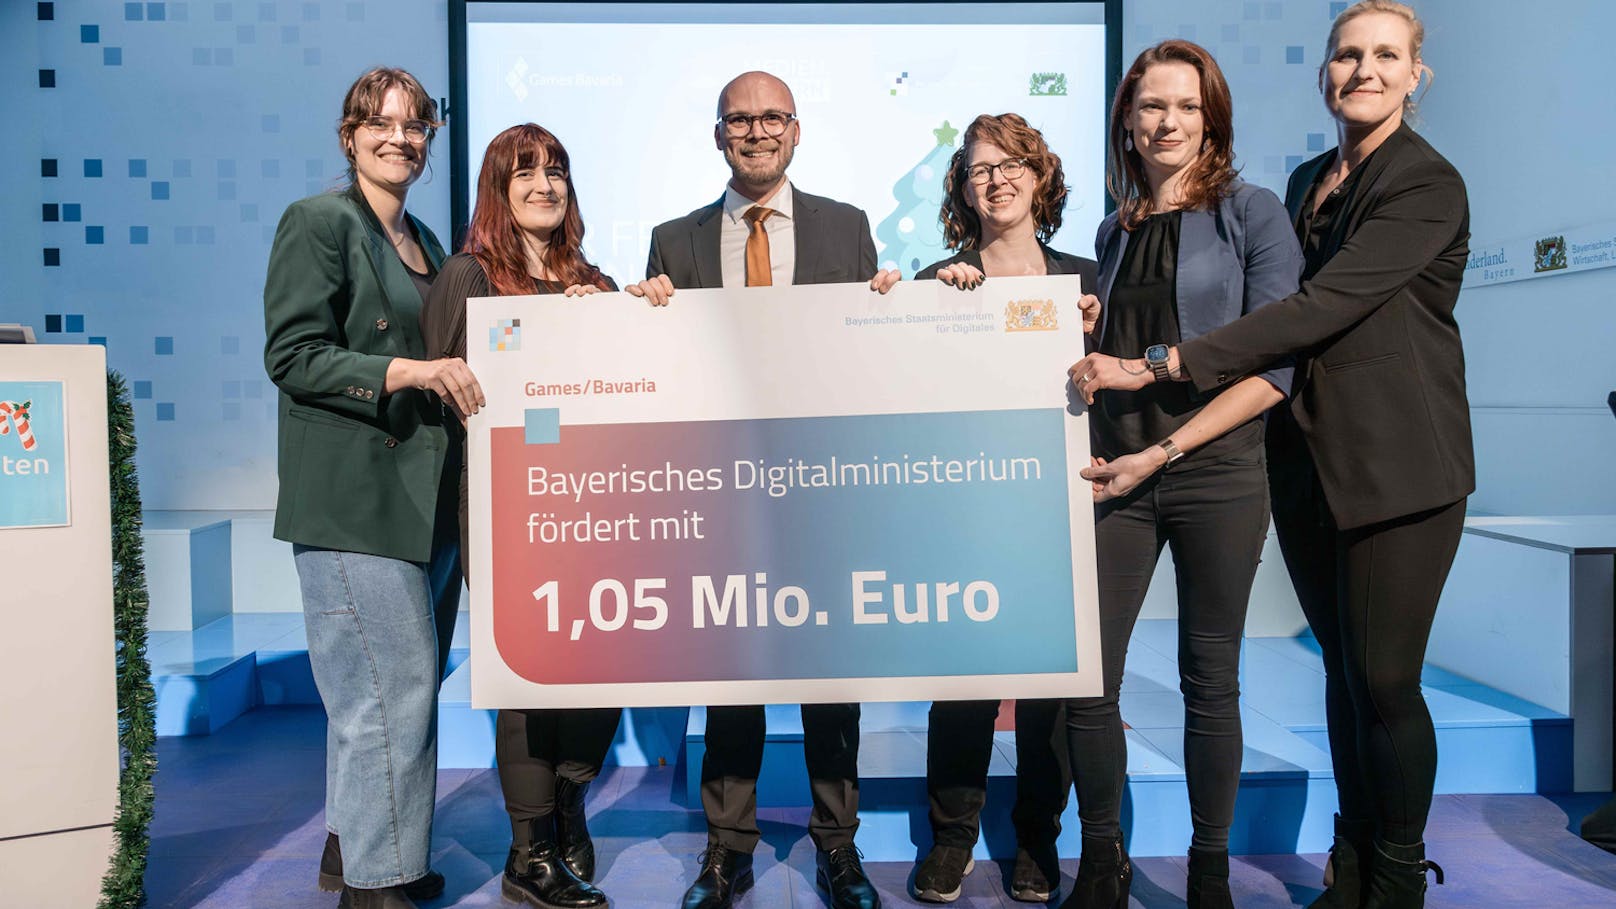 Digitalminister Dr. Fabian Mehring (3. von links) mit dem Team von Games/Bavaria (v.l.n.r.): Anja Krendlinger, Laura Wünsch, Alexandra Palme, Lina Timm und Simone Watzinger.